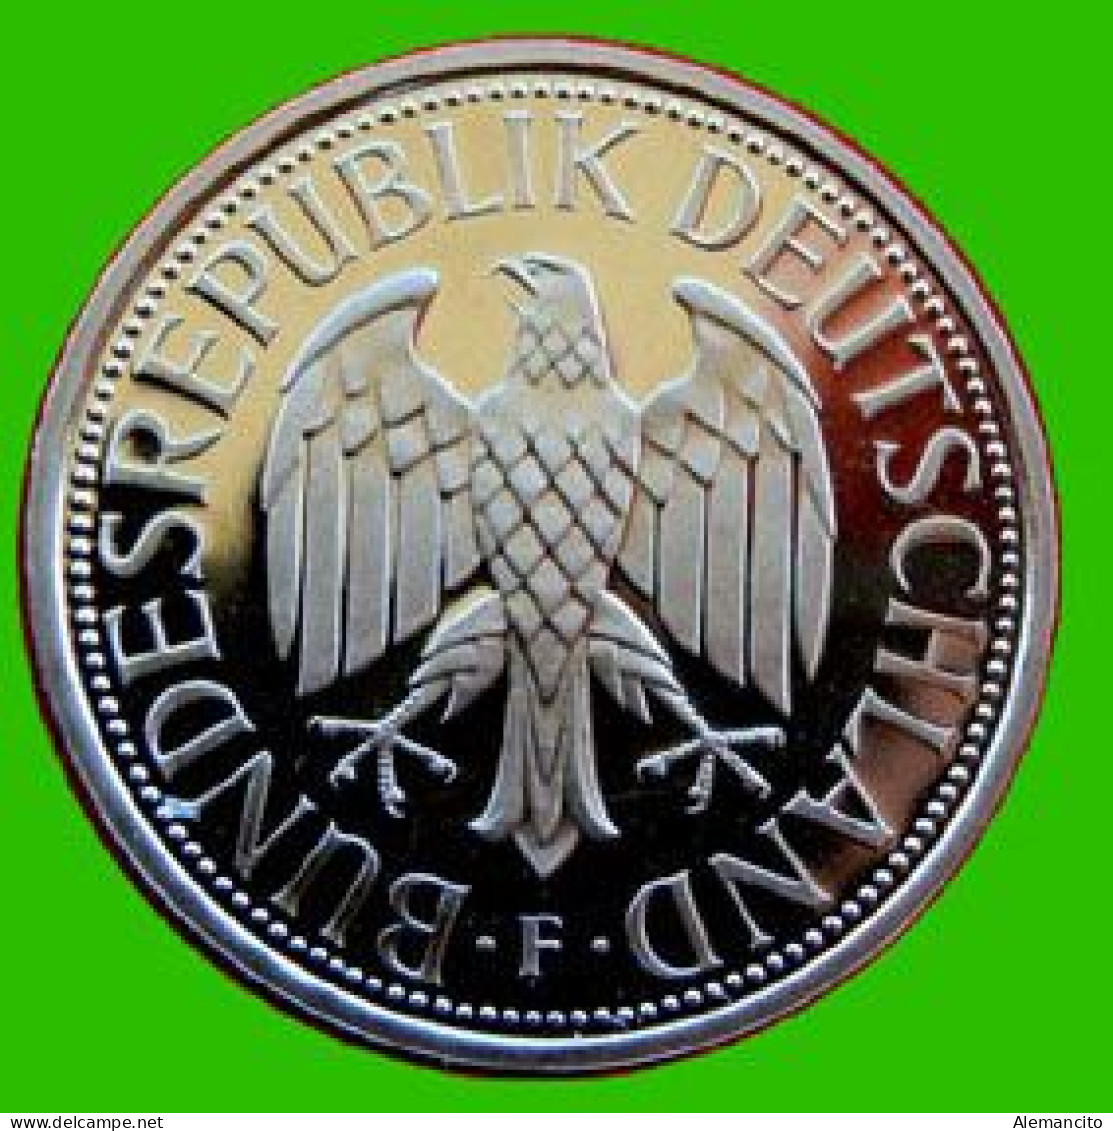 ALEMANIA - DEUTSCHLAND - GERMANY - 2 -MONEDAS DE 1.00 DM ESPIGAS Y AGUILA DEL AÑO 1975 CON LAS CECAS - F.- G - 1 Marco